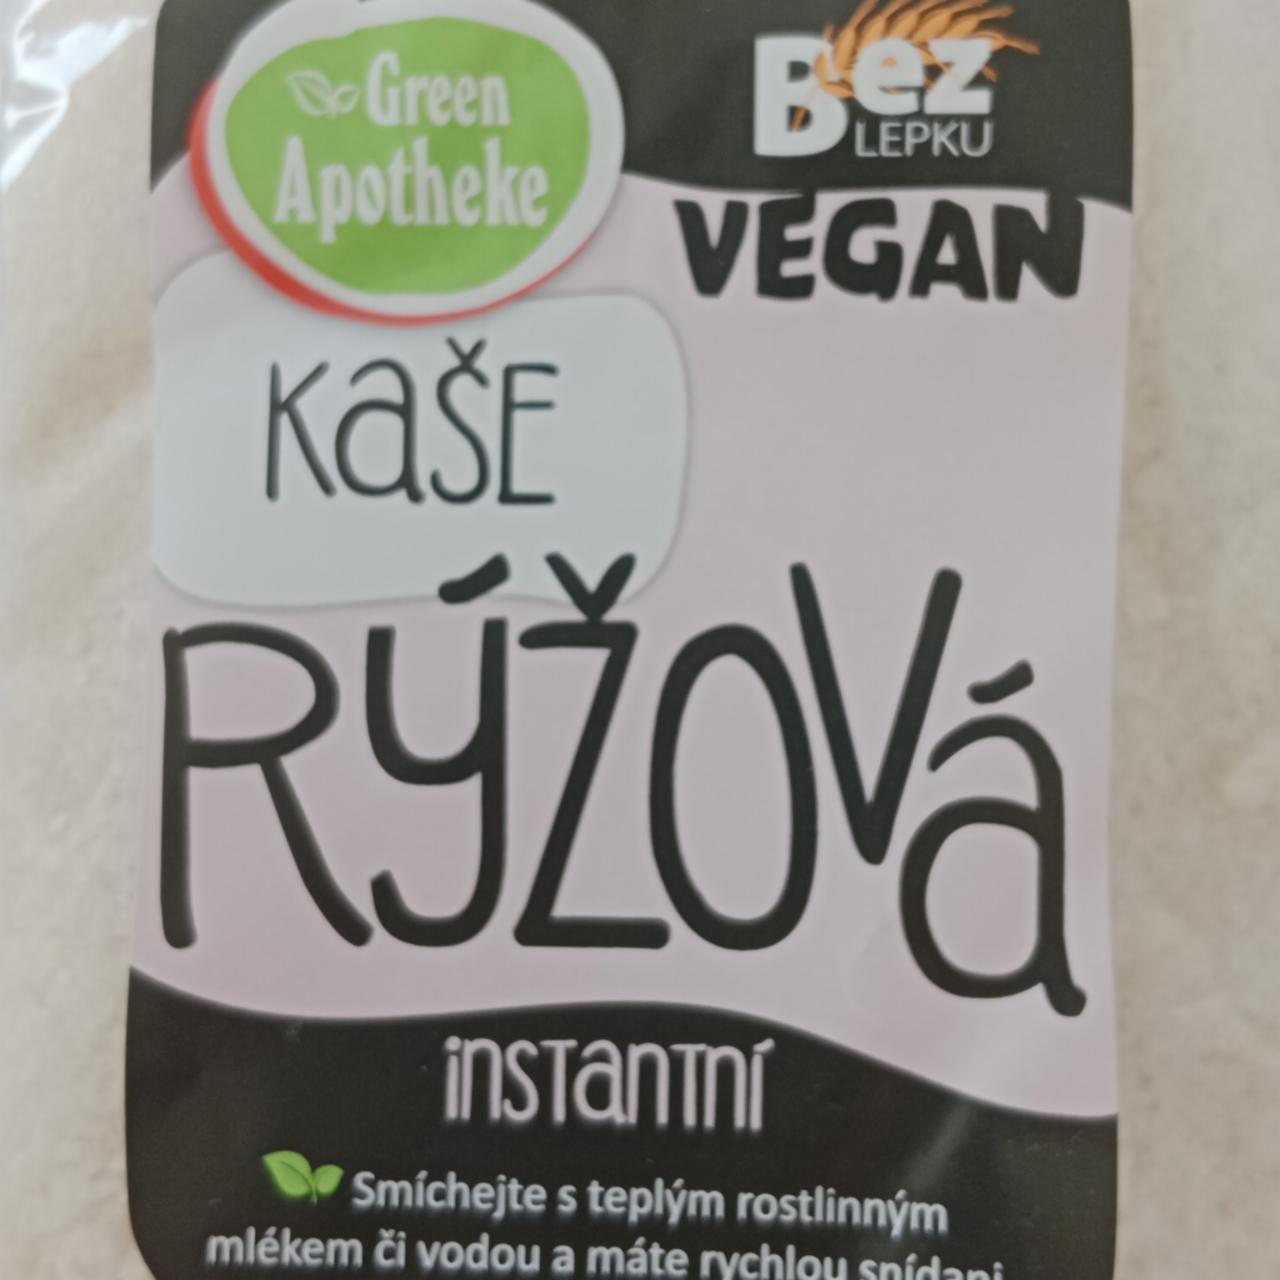 Fotografie - kaše Rýžová instantní vegan Green Apotheke